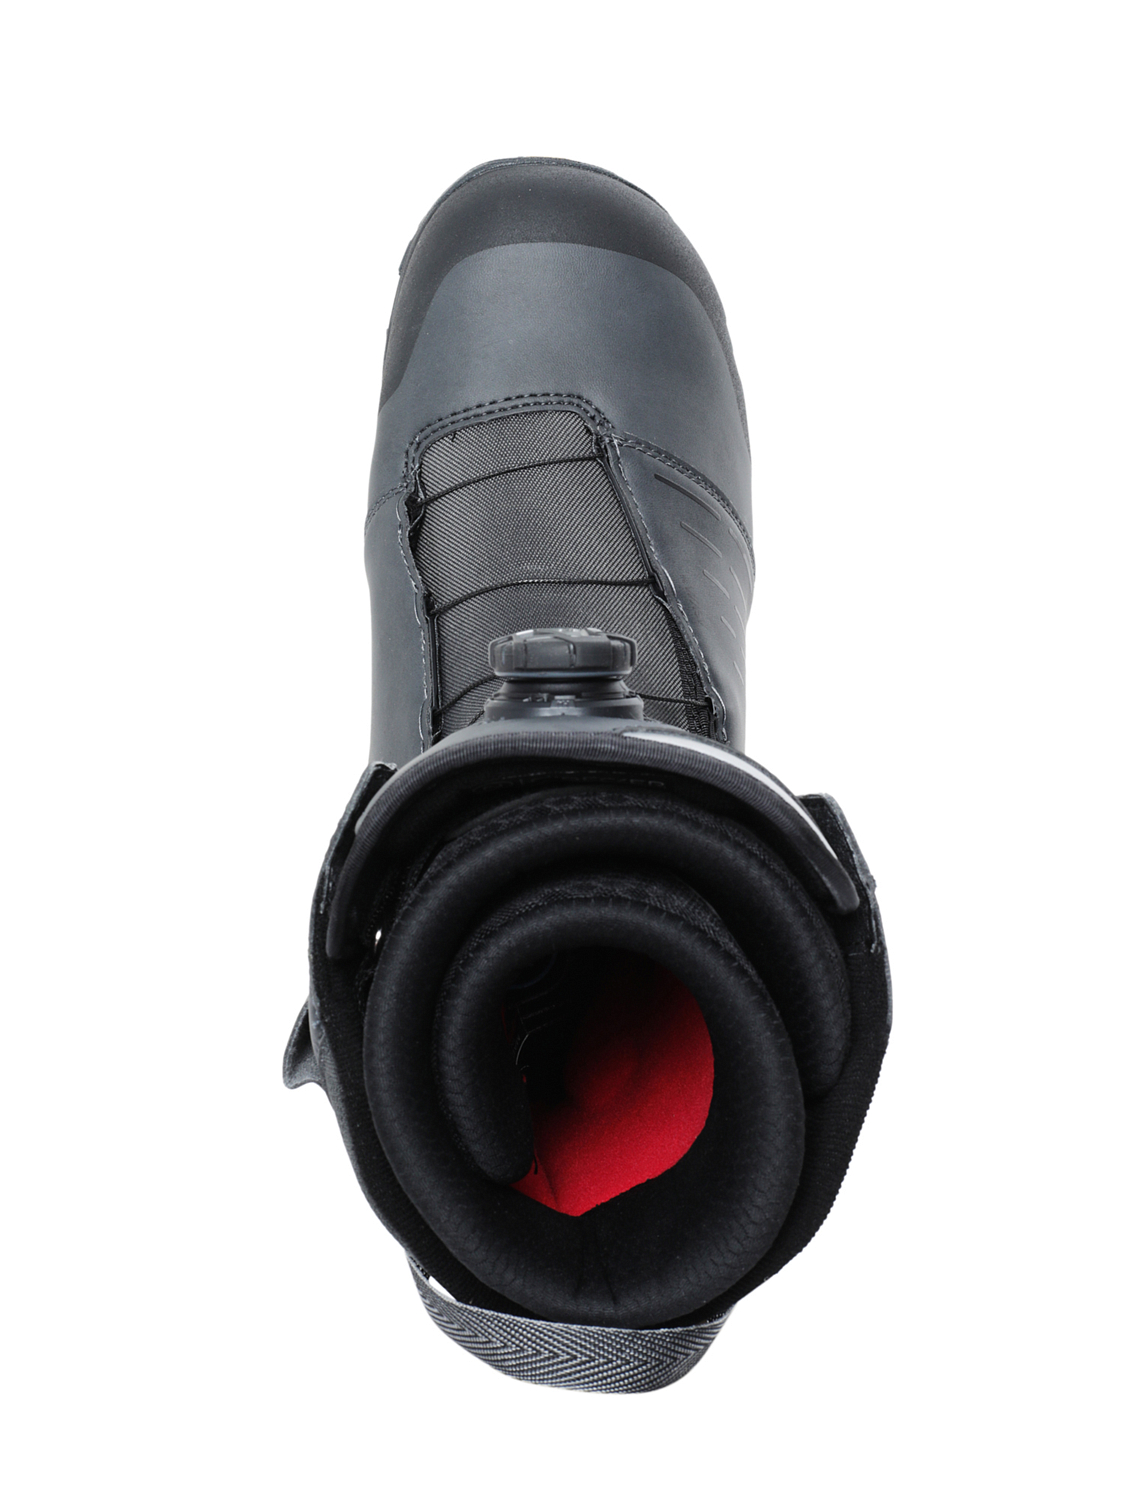 Ботинки для сноуборда NIDECKER 2020-21 Falcon Charcoal